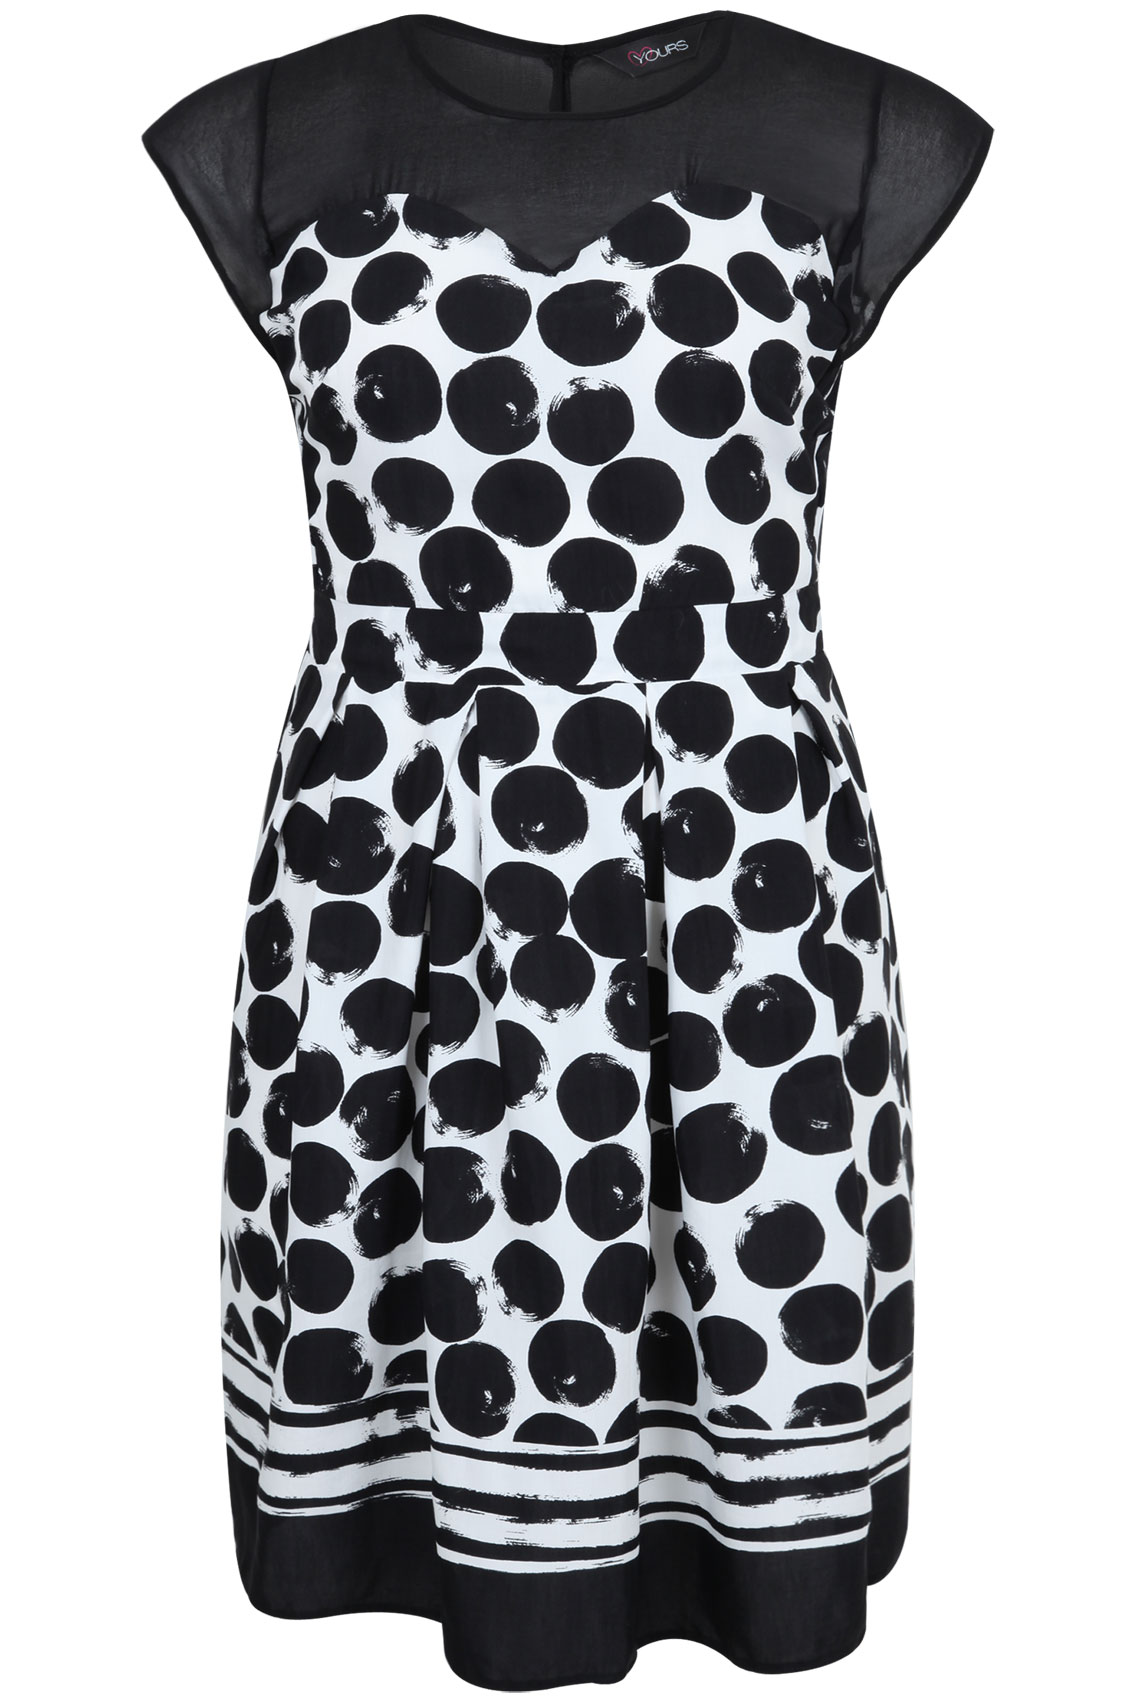 Black & White Spot Print Dress With Sheer Yoke plus size 16,18,20,22,24 ...